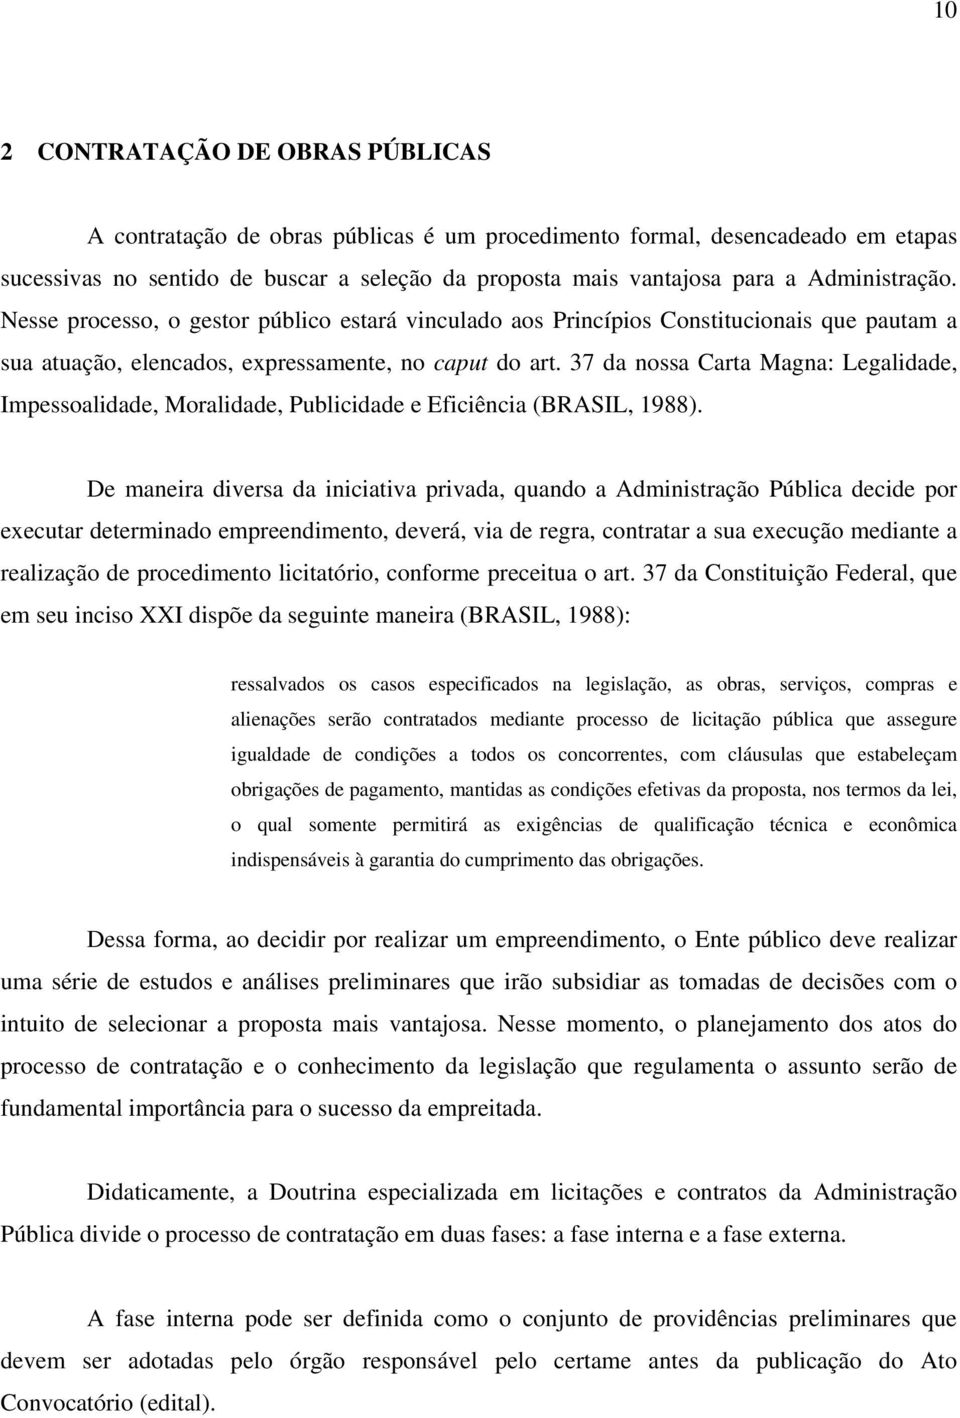 37 da nossa Carta Magna: Legalidade, Impessoalidade, Moralidade, Publicidade e Eficiência (BRASIL, 1988).